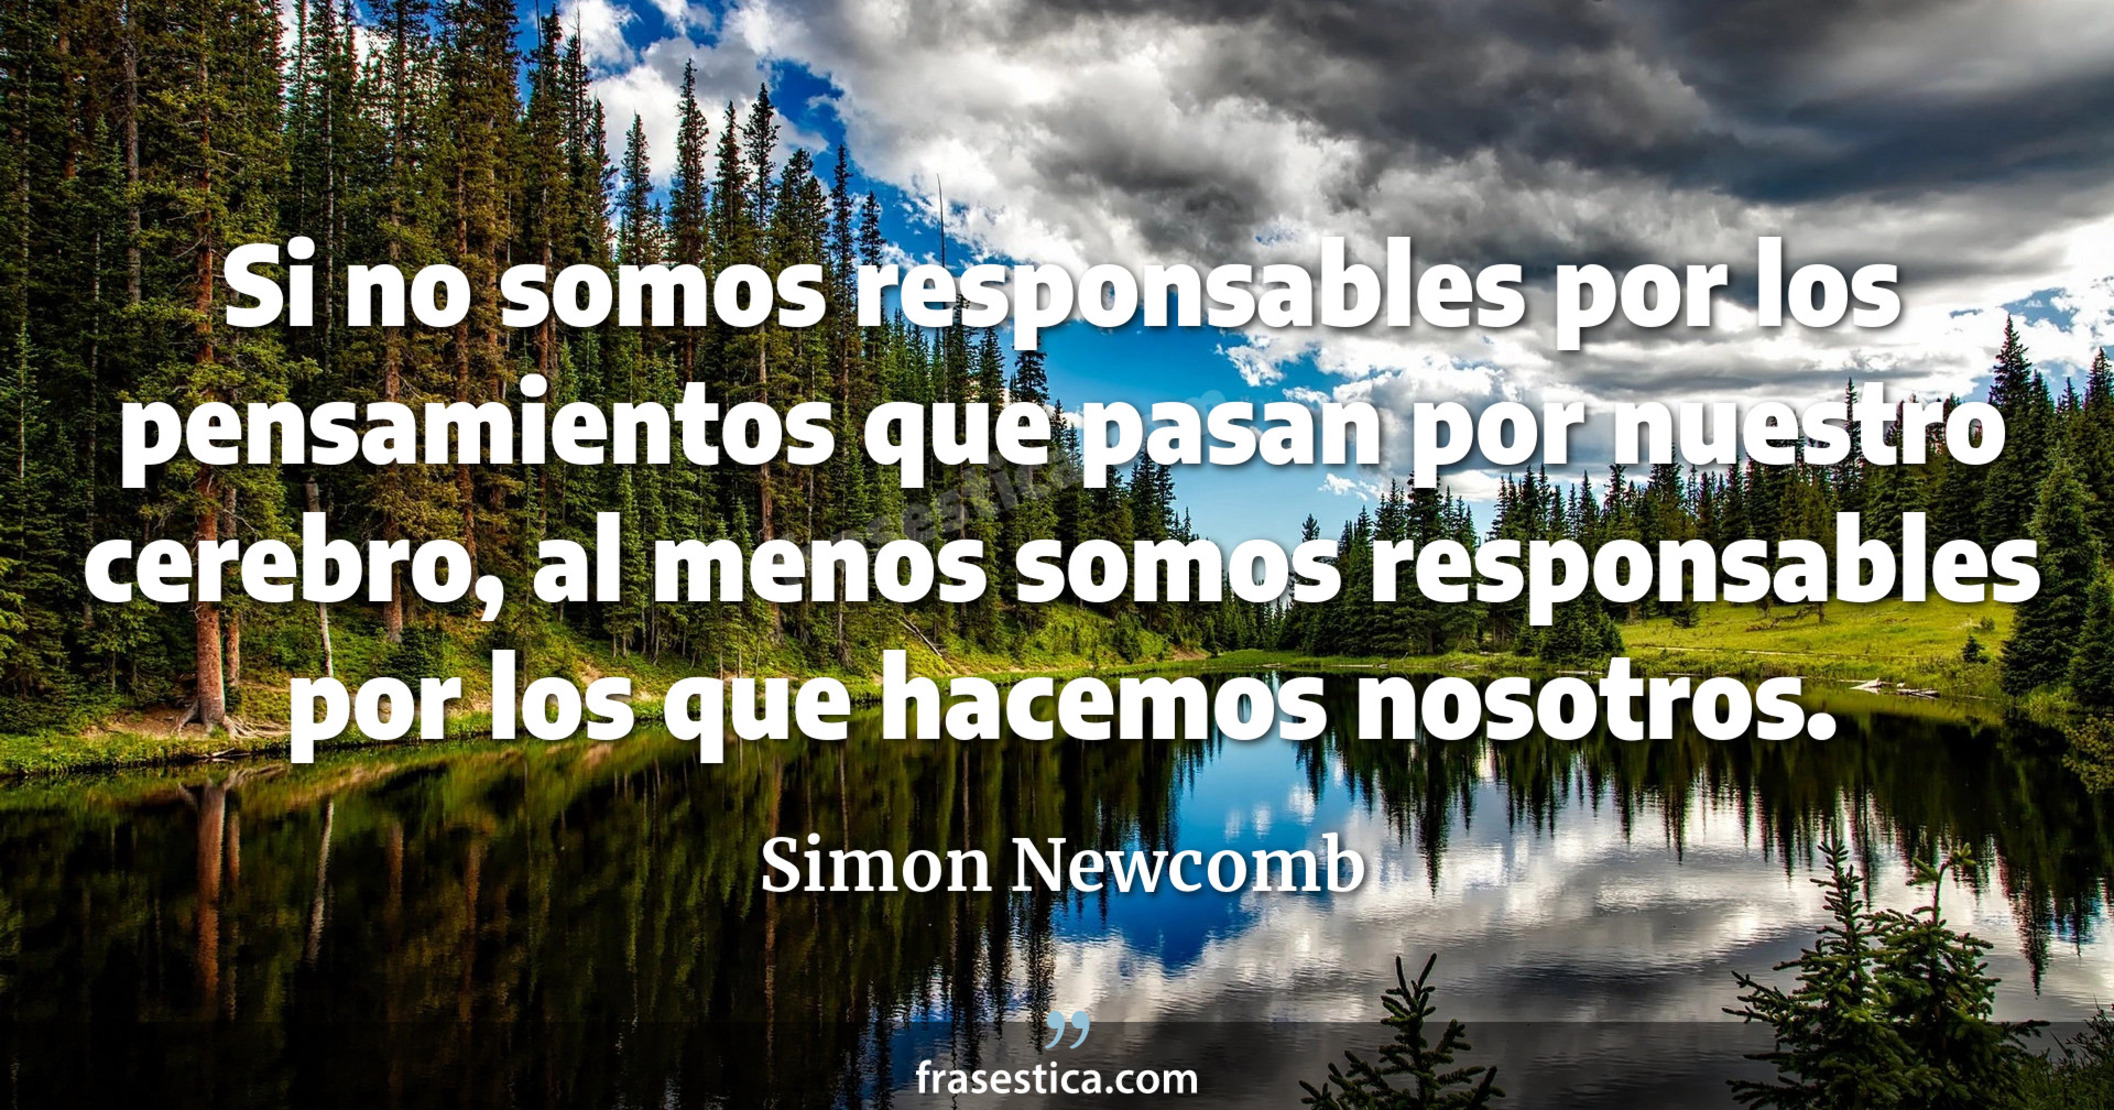 Si no somos responsables por los pensamientos que pasan por nuestro cerebro, al menos somos responsables por los que hacemos nosotros. - Simon Newcomb